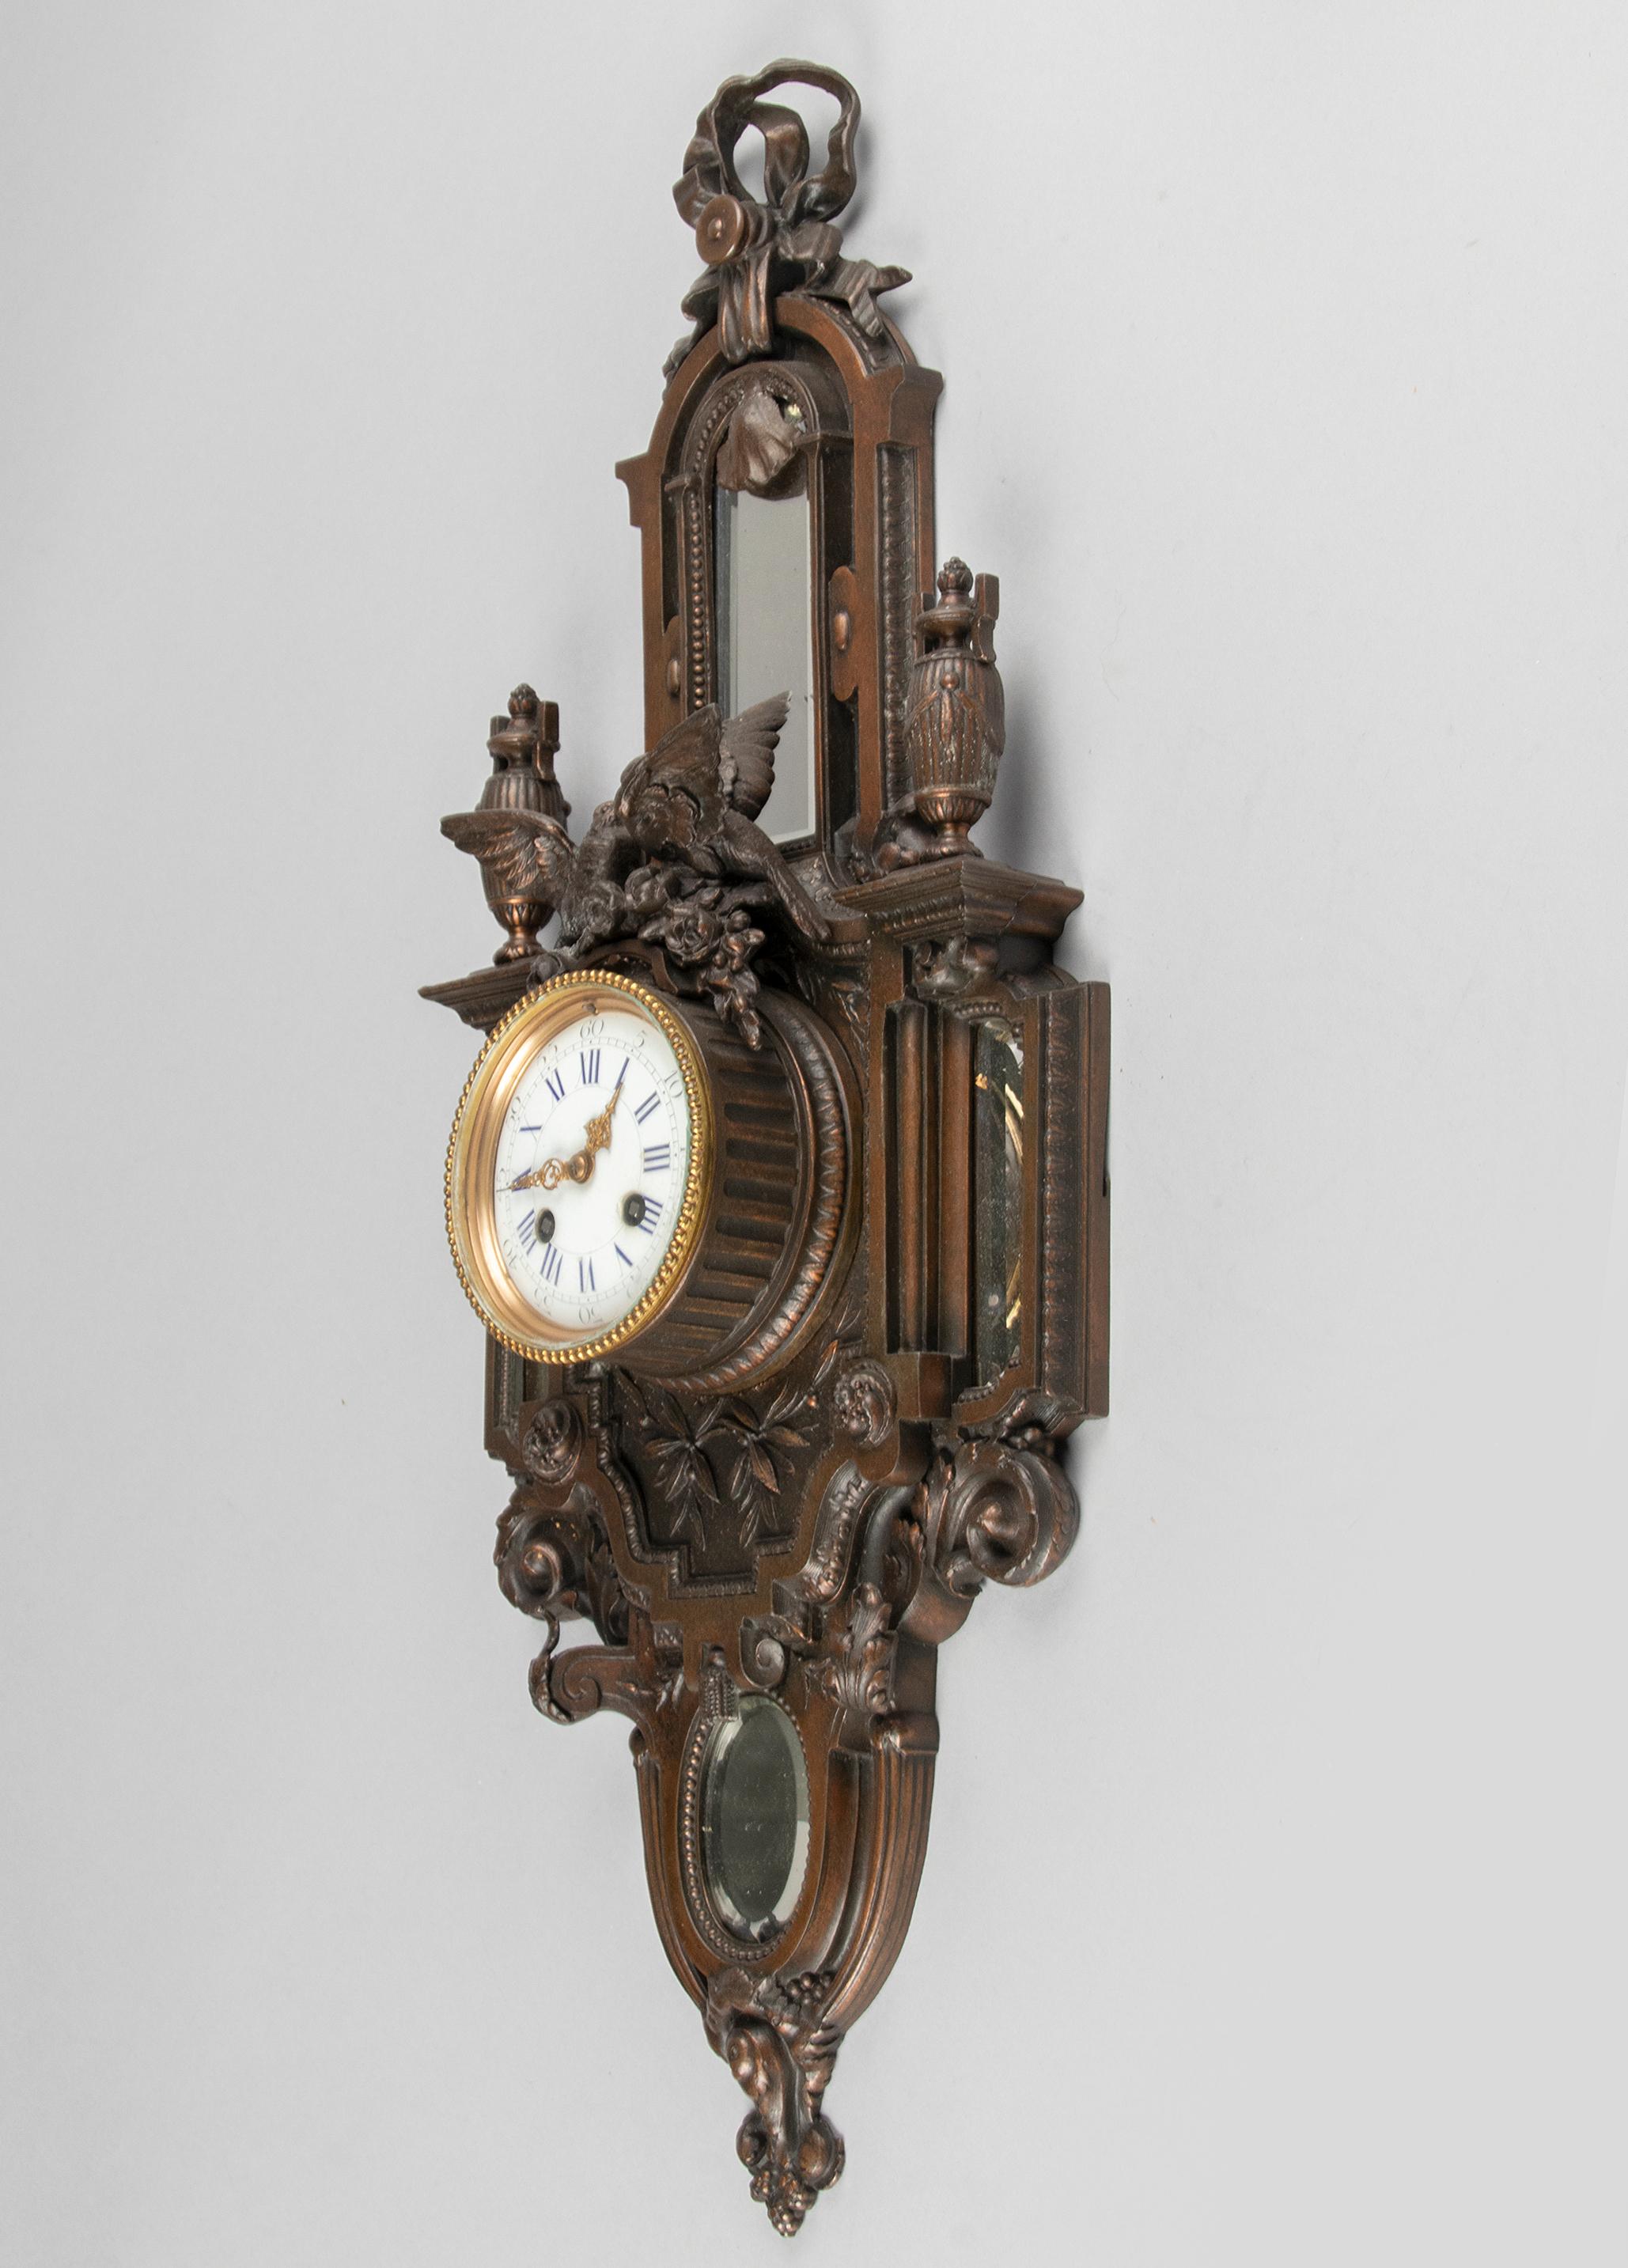 Pendule murale à cartel de style Louis XVI, fabriquée en France vers 1880-1890. Le boîtier est en spelter (alliage métallique) coulé et équipé de quatre verres miroirs biseautés. Le cadran est recouvert d'une finition émaillée. Au-dessus de